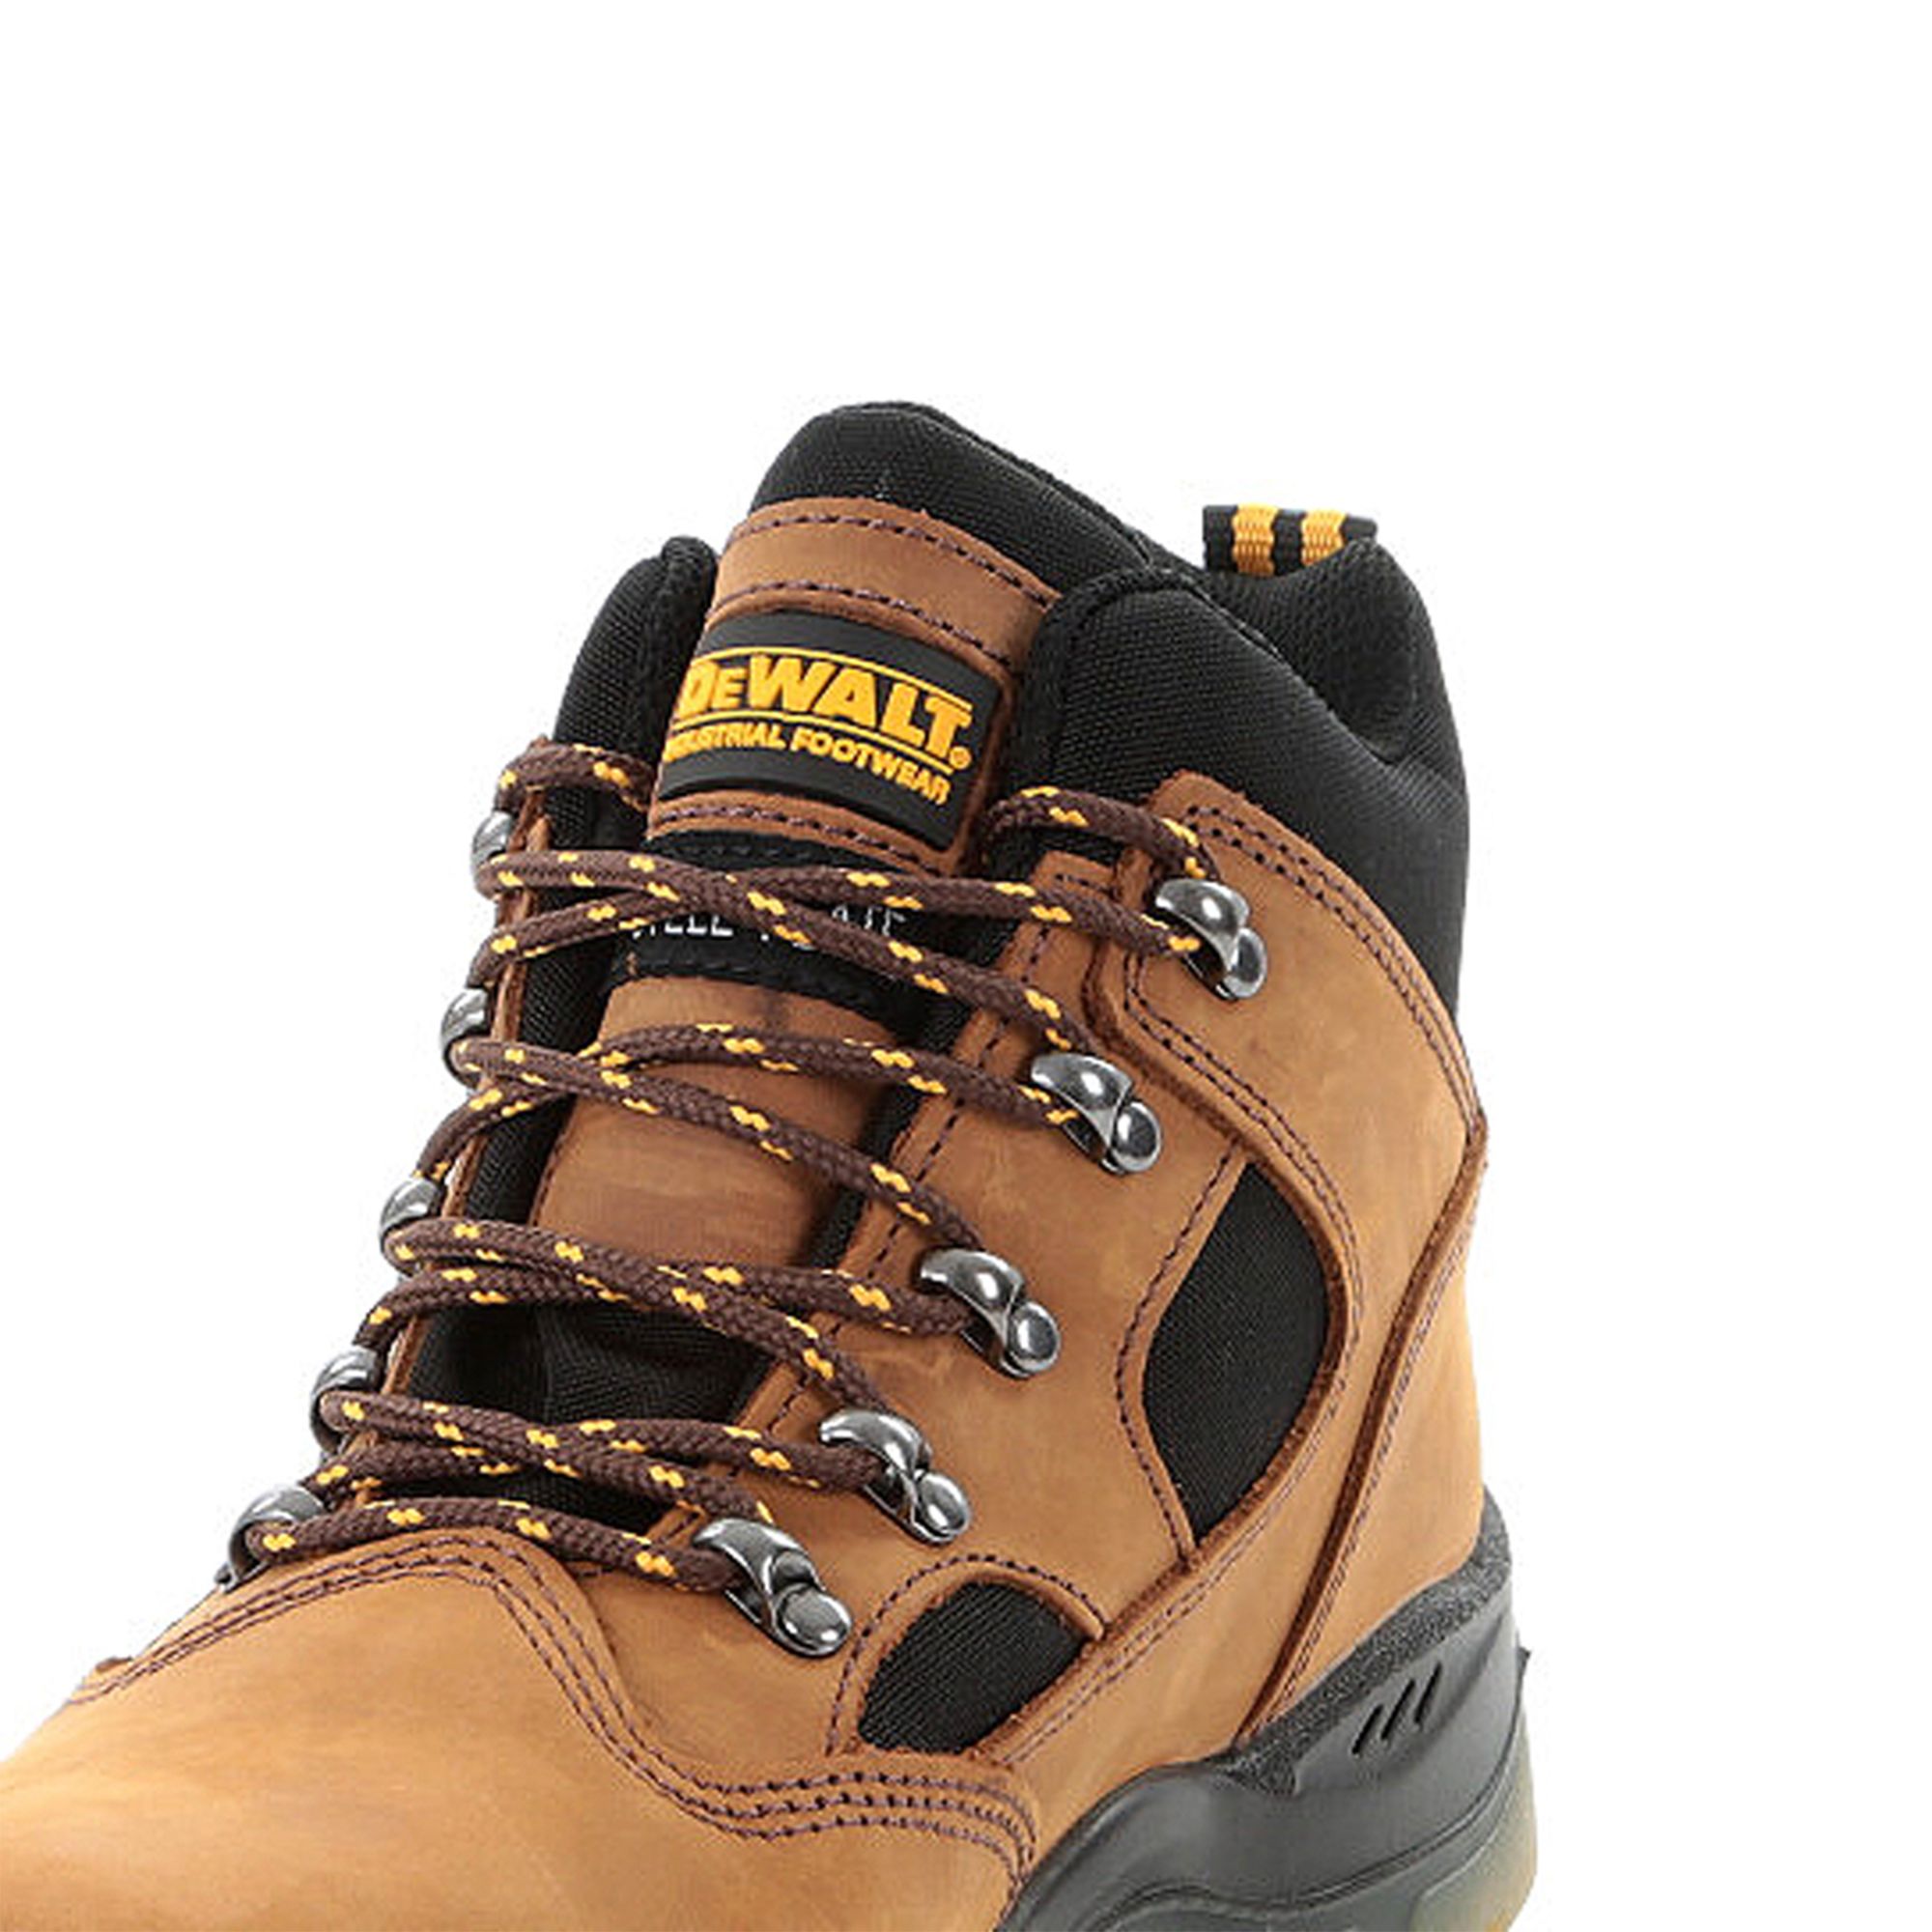 DeWalt Challenger Men's Brown Safety boots, Size 11